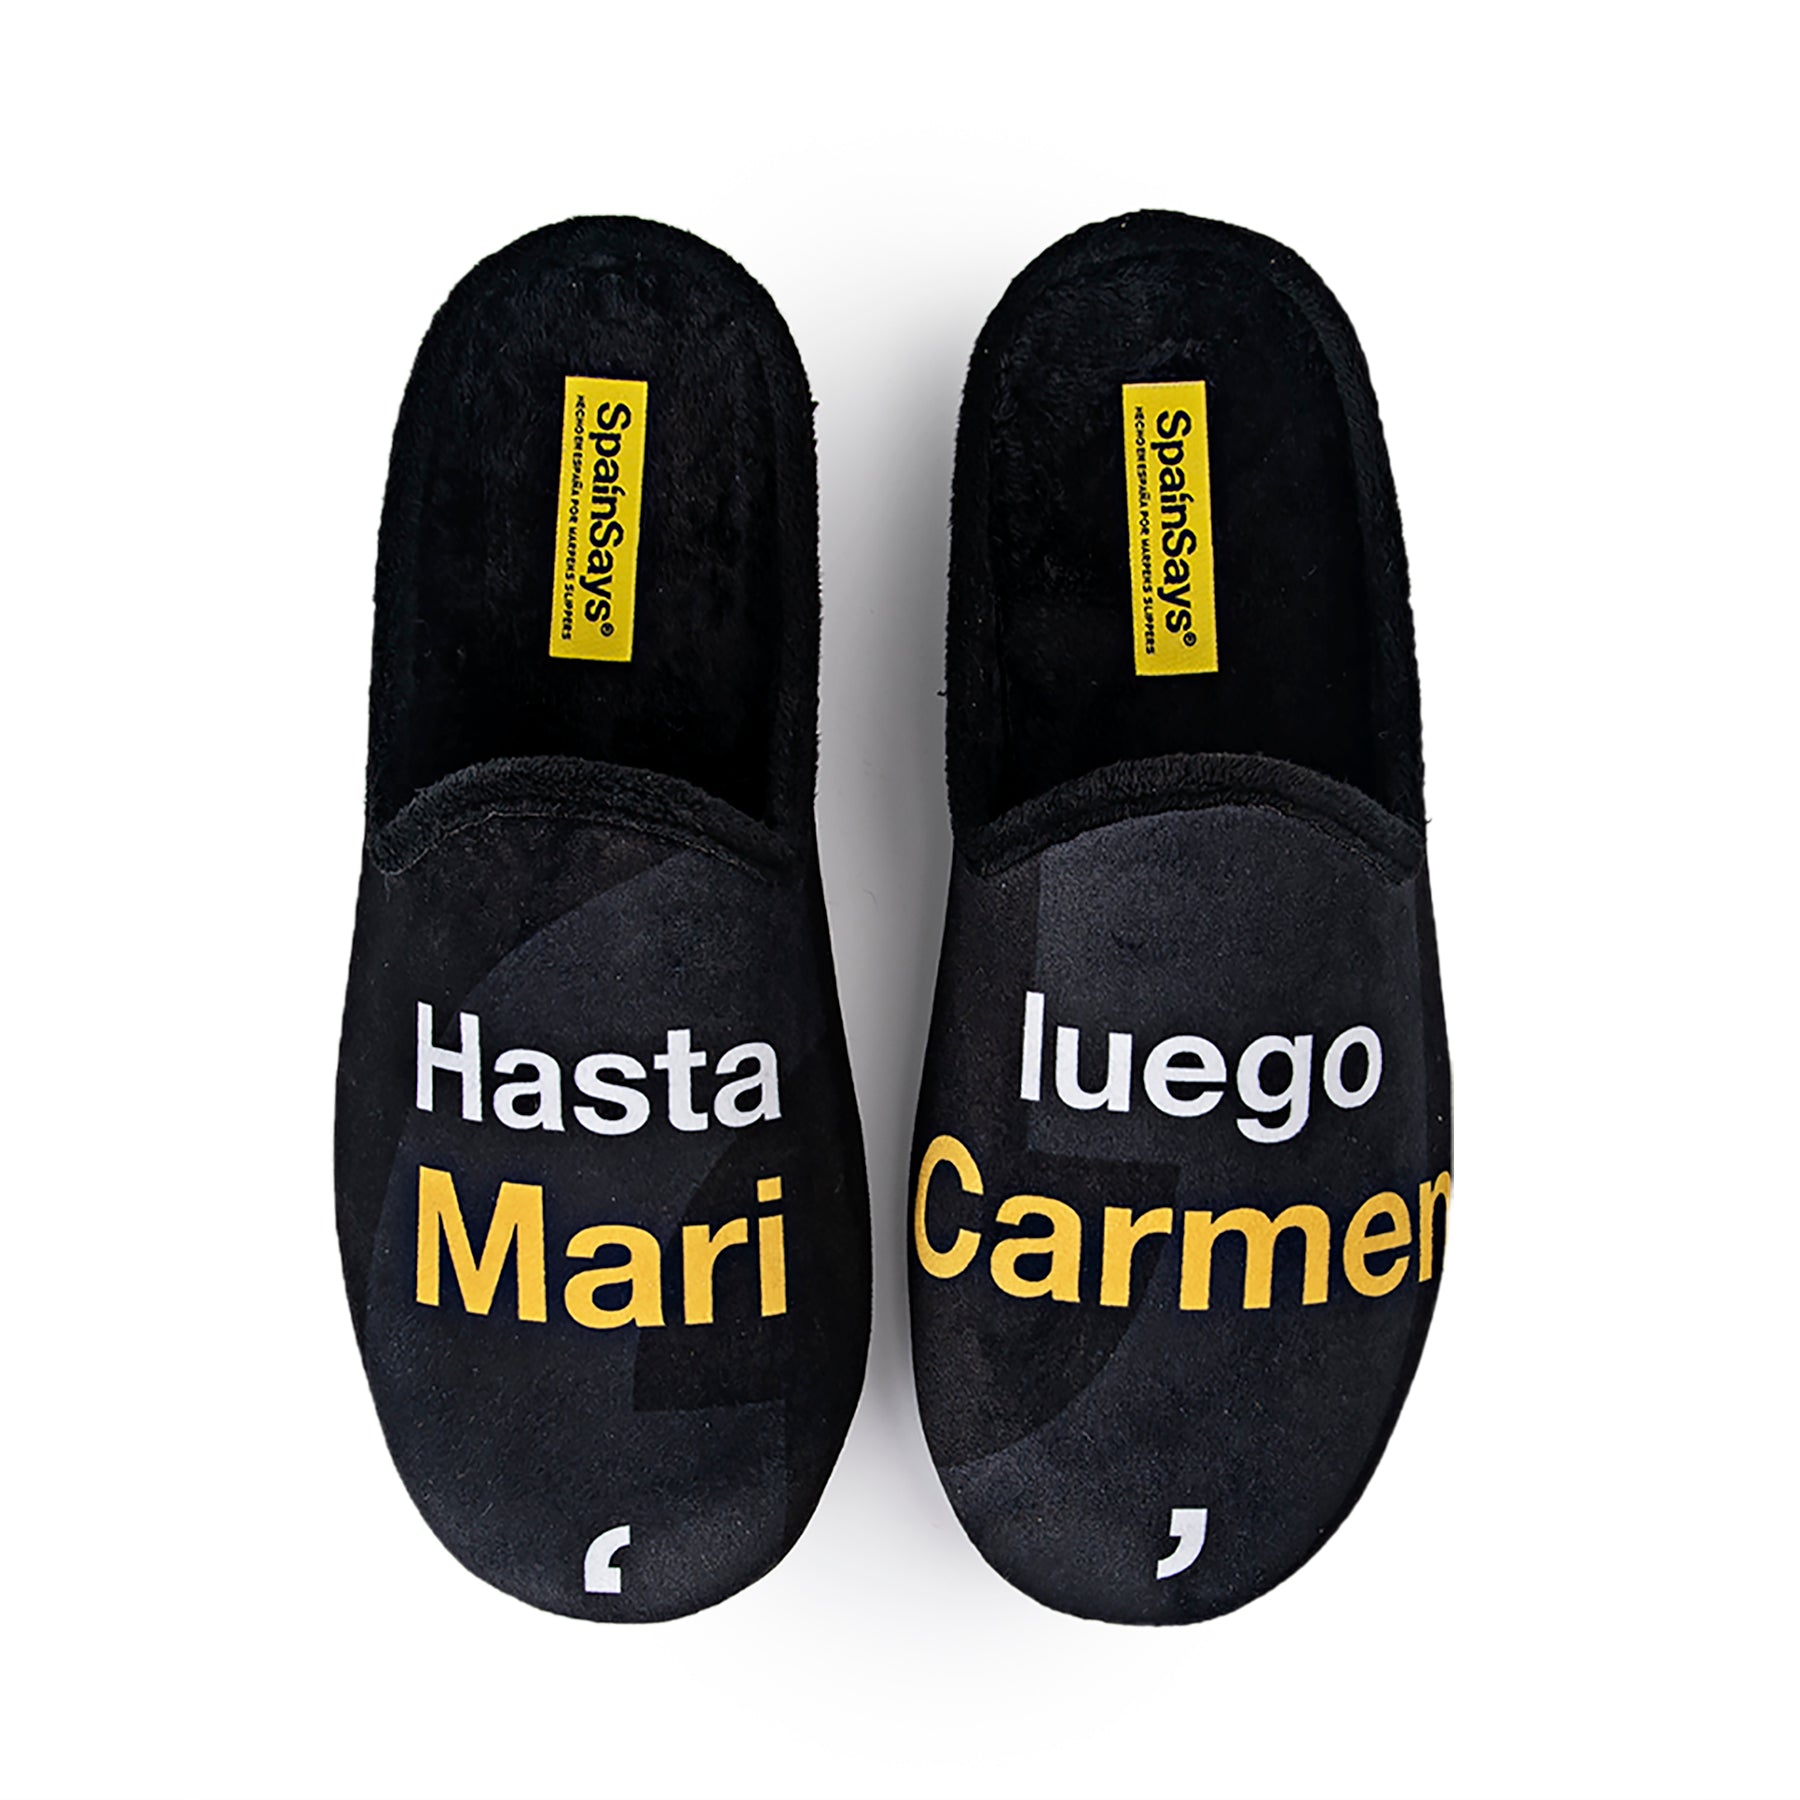 Slippers "Hasta luego Mari Carmen".